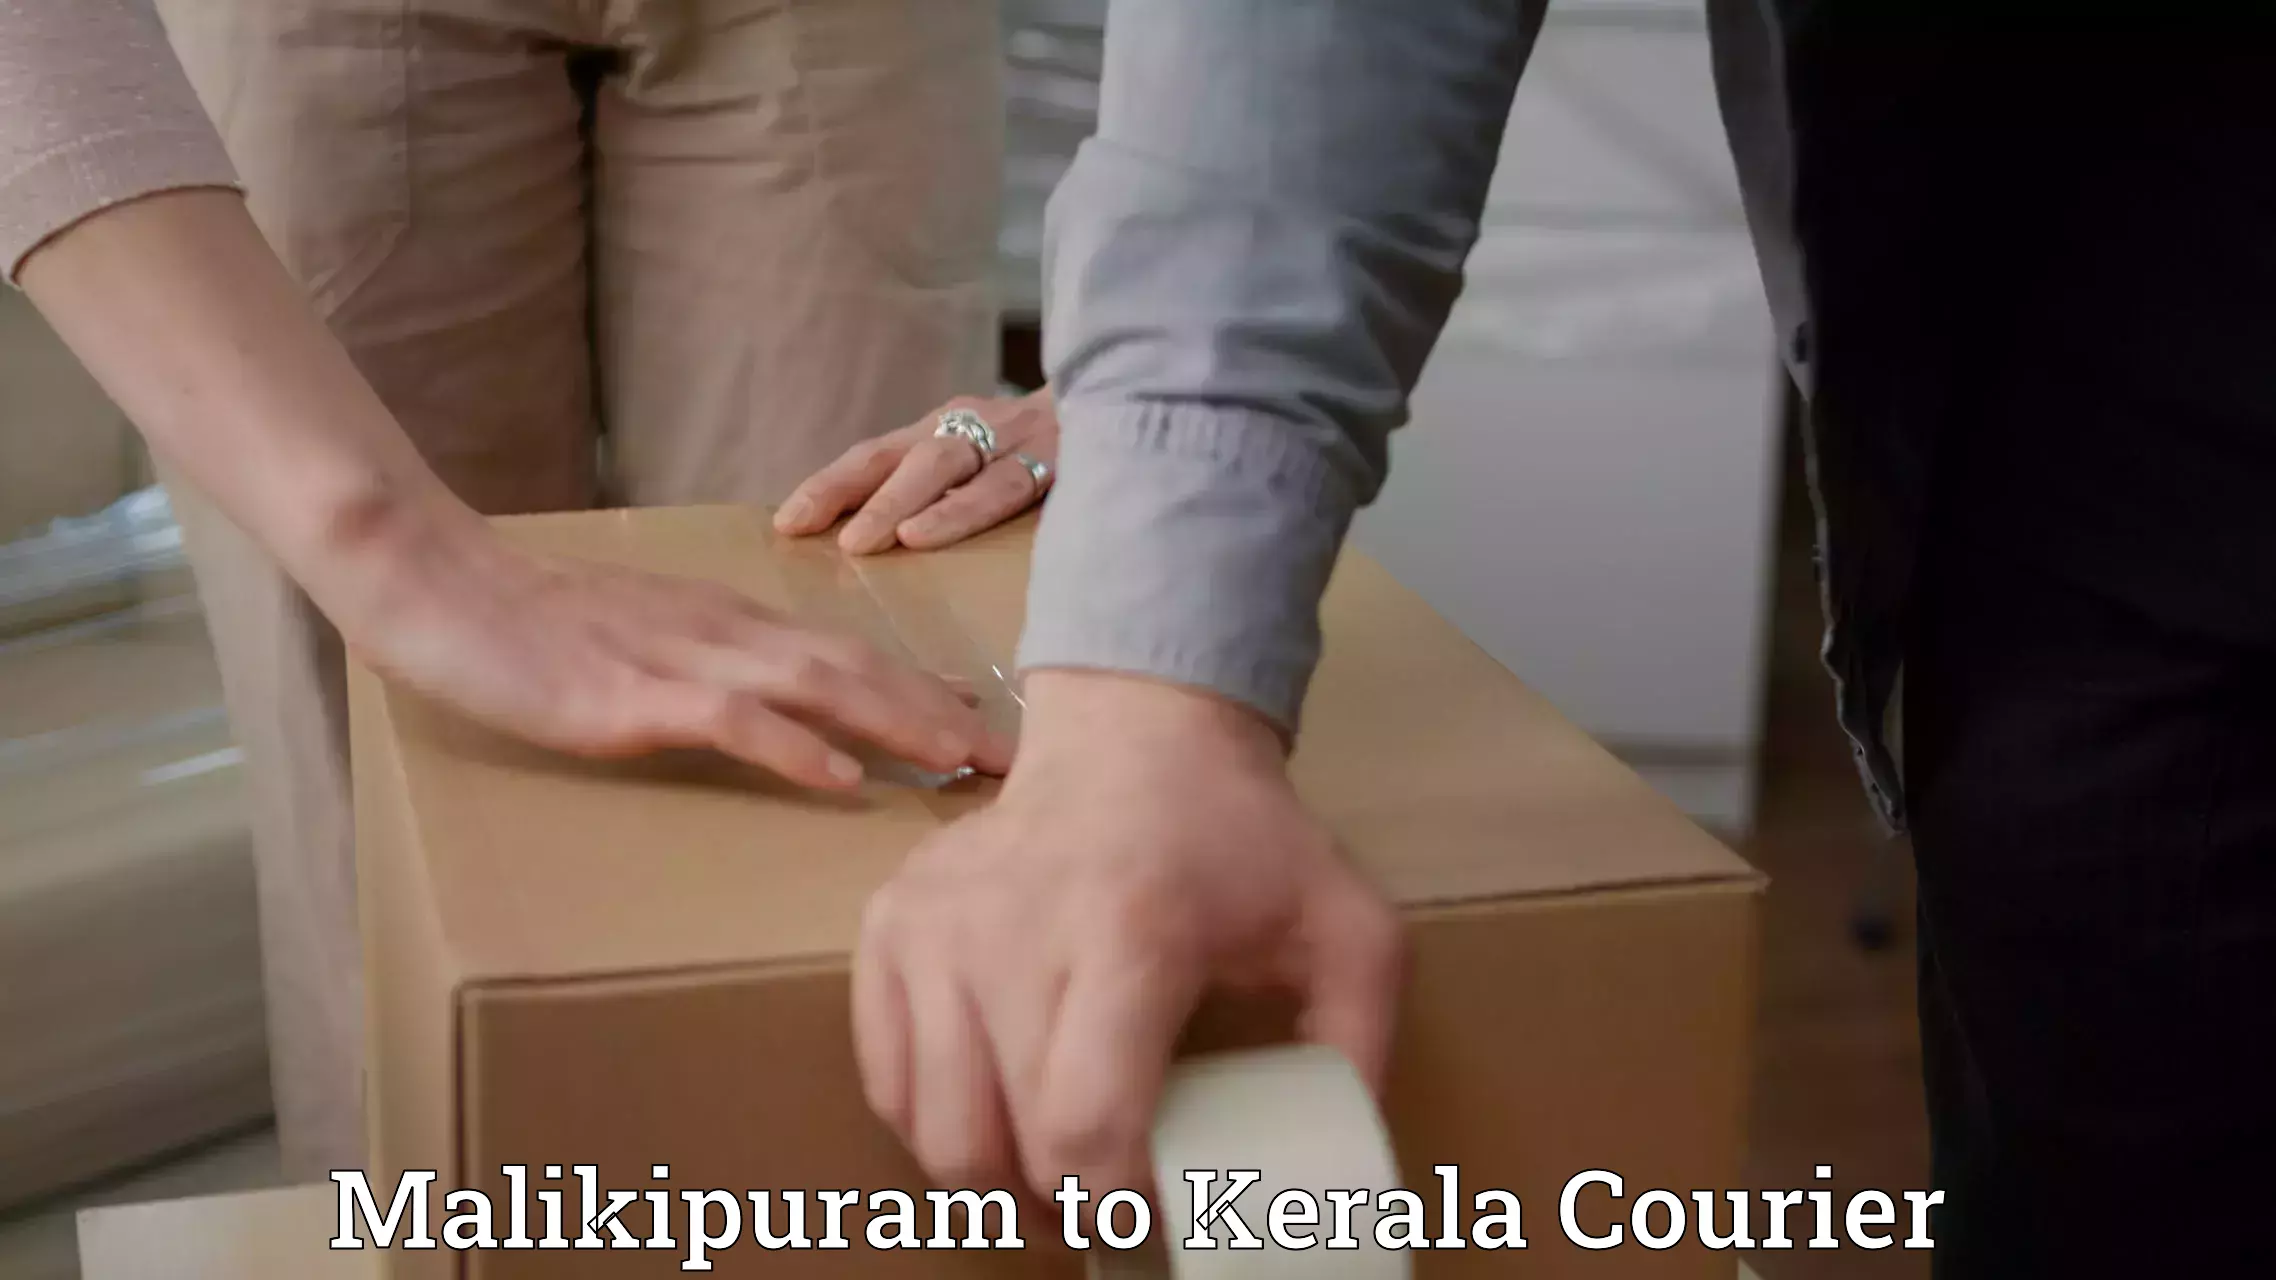 Express package handling Malikipuram to Malappuram